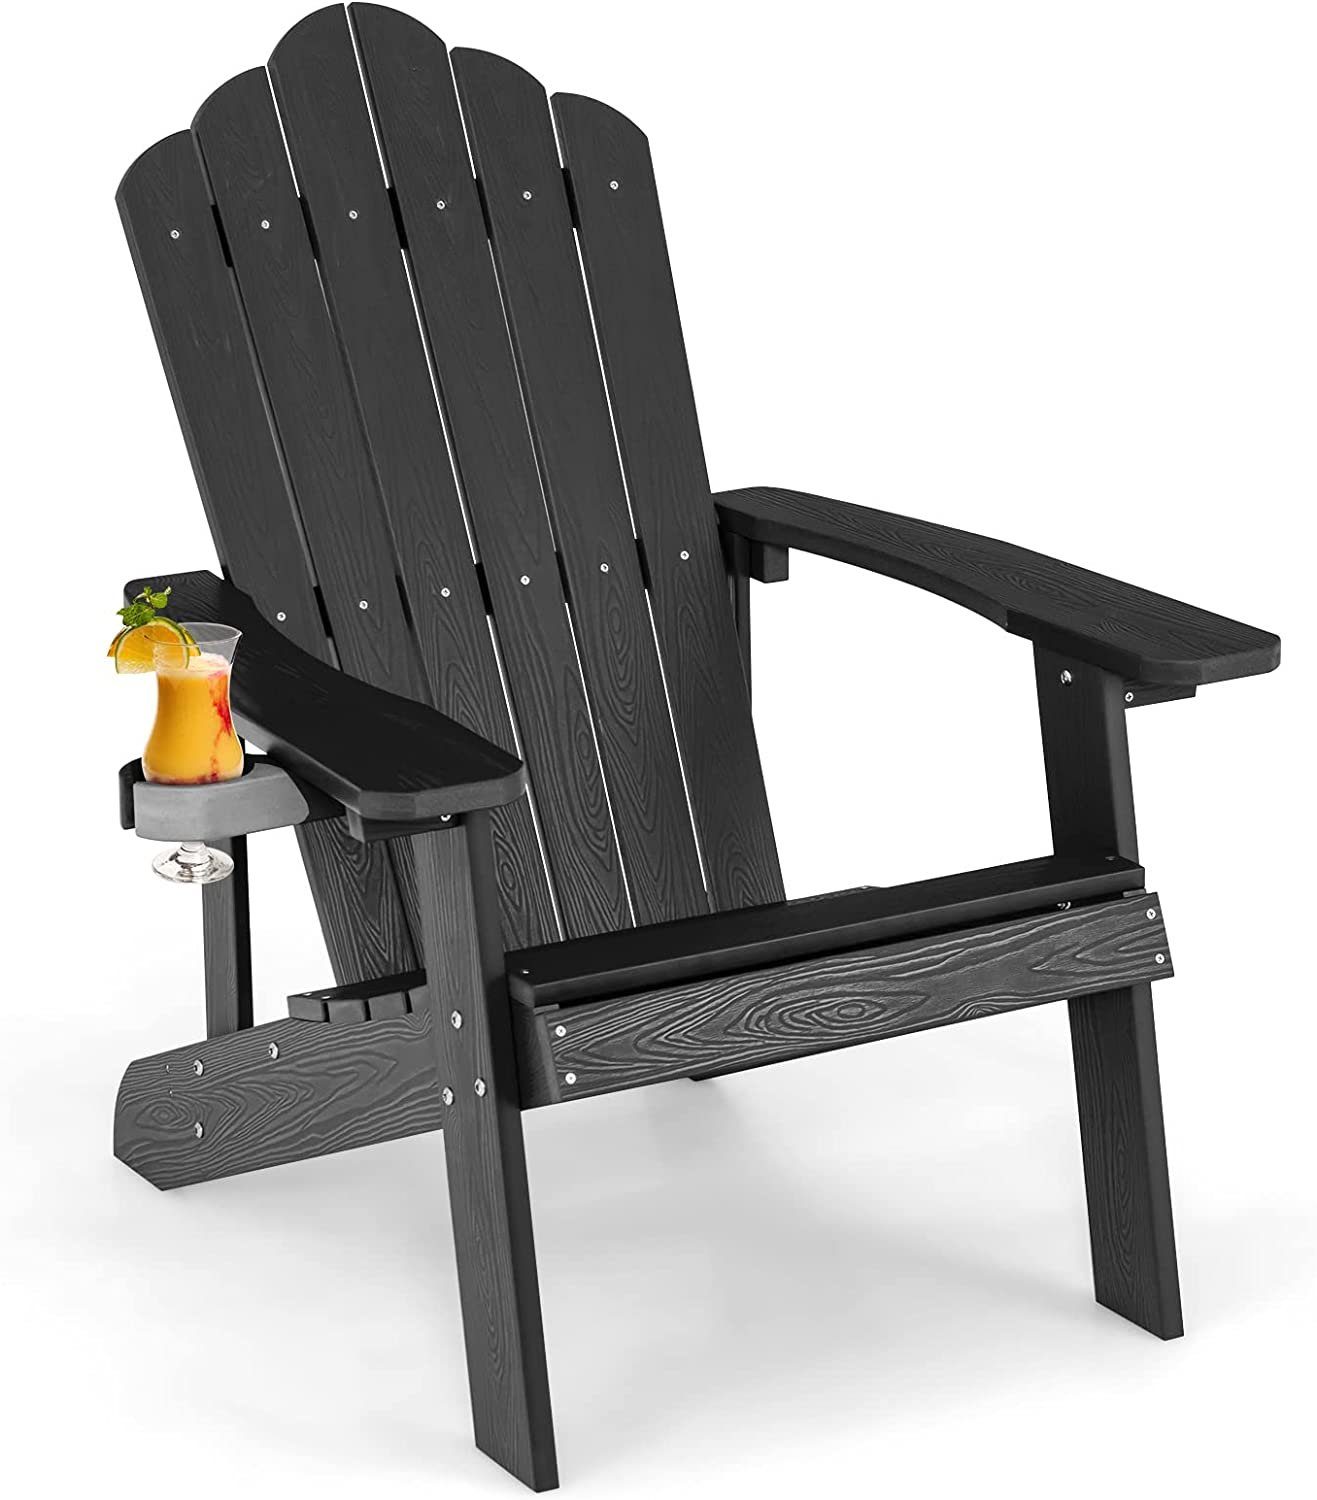 KOMFOTTEU Gartenstuhl Adirondack Stuhl mit Getränkehalter, 150 kg Tragfähigkeit